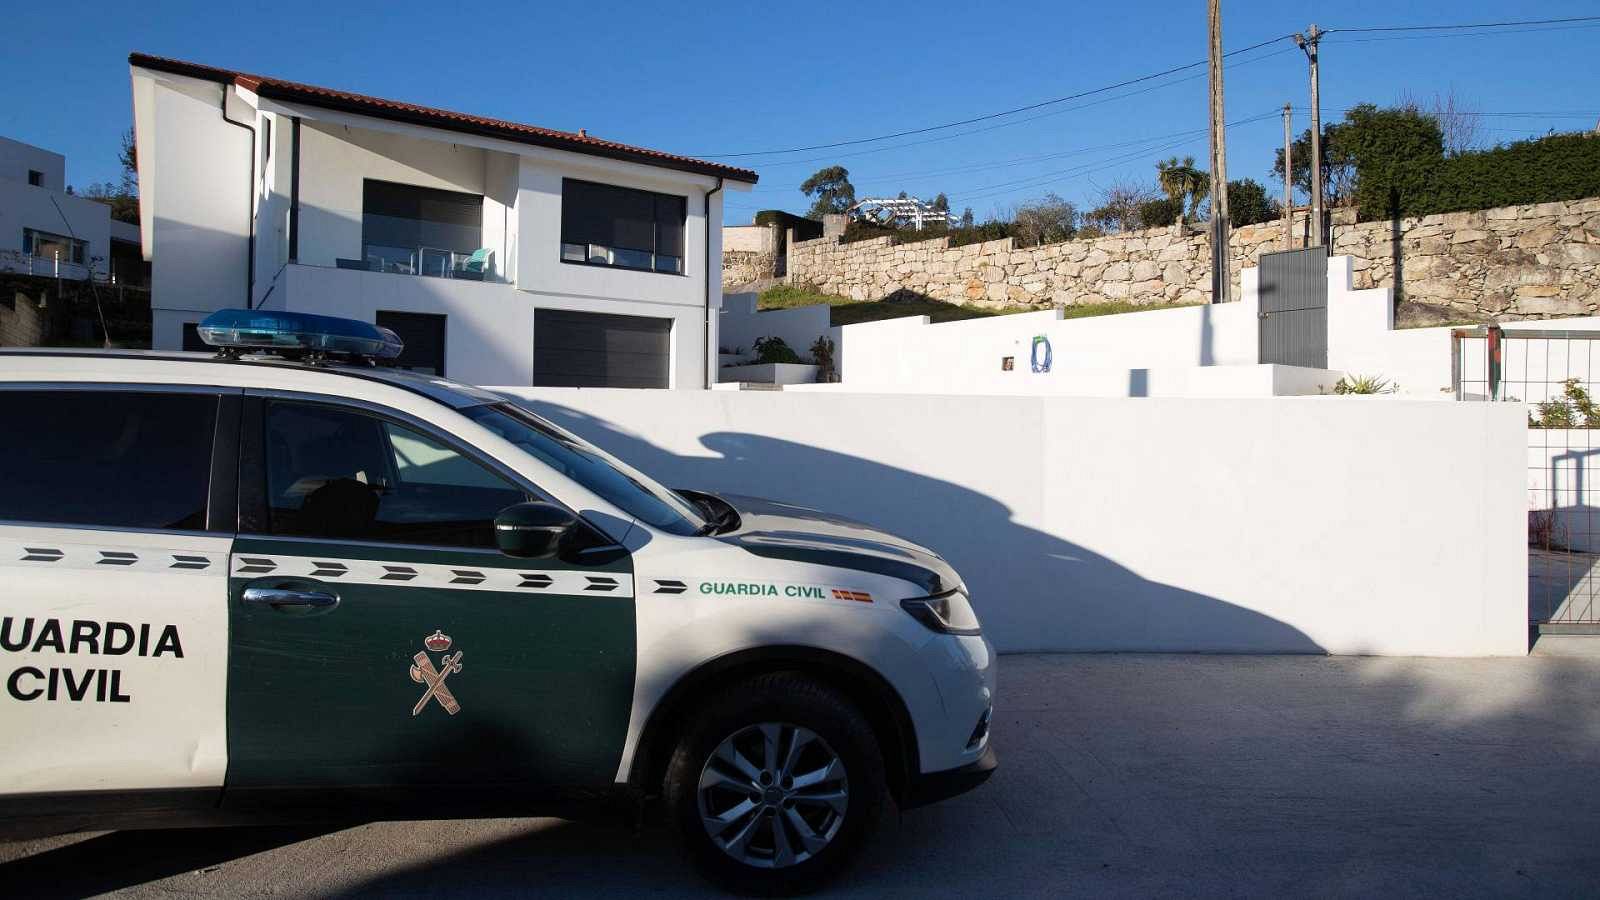 Confirmado como un crimen machista el asesinato de una mujer en Baiona, Pontevedra